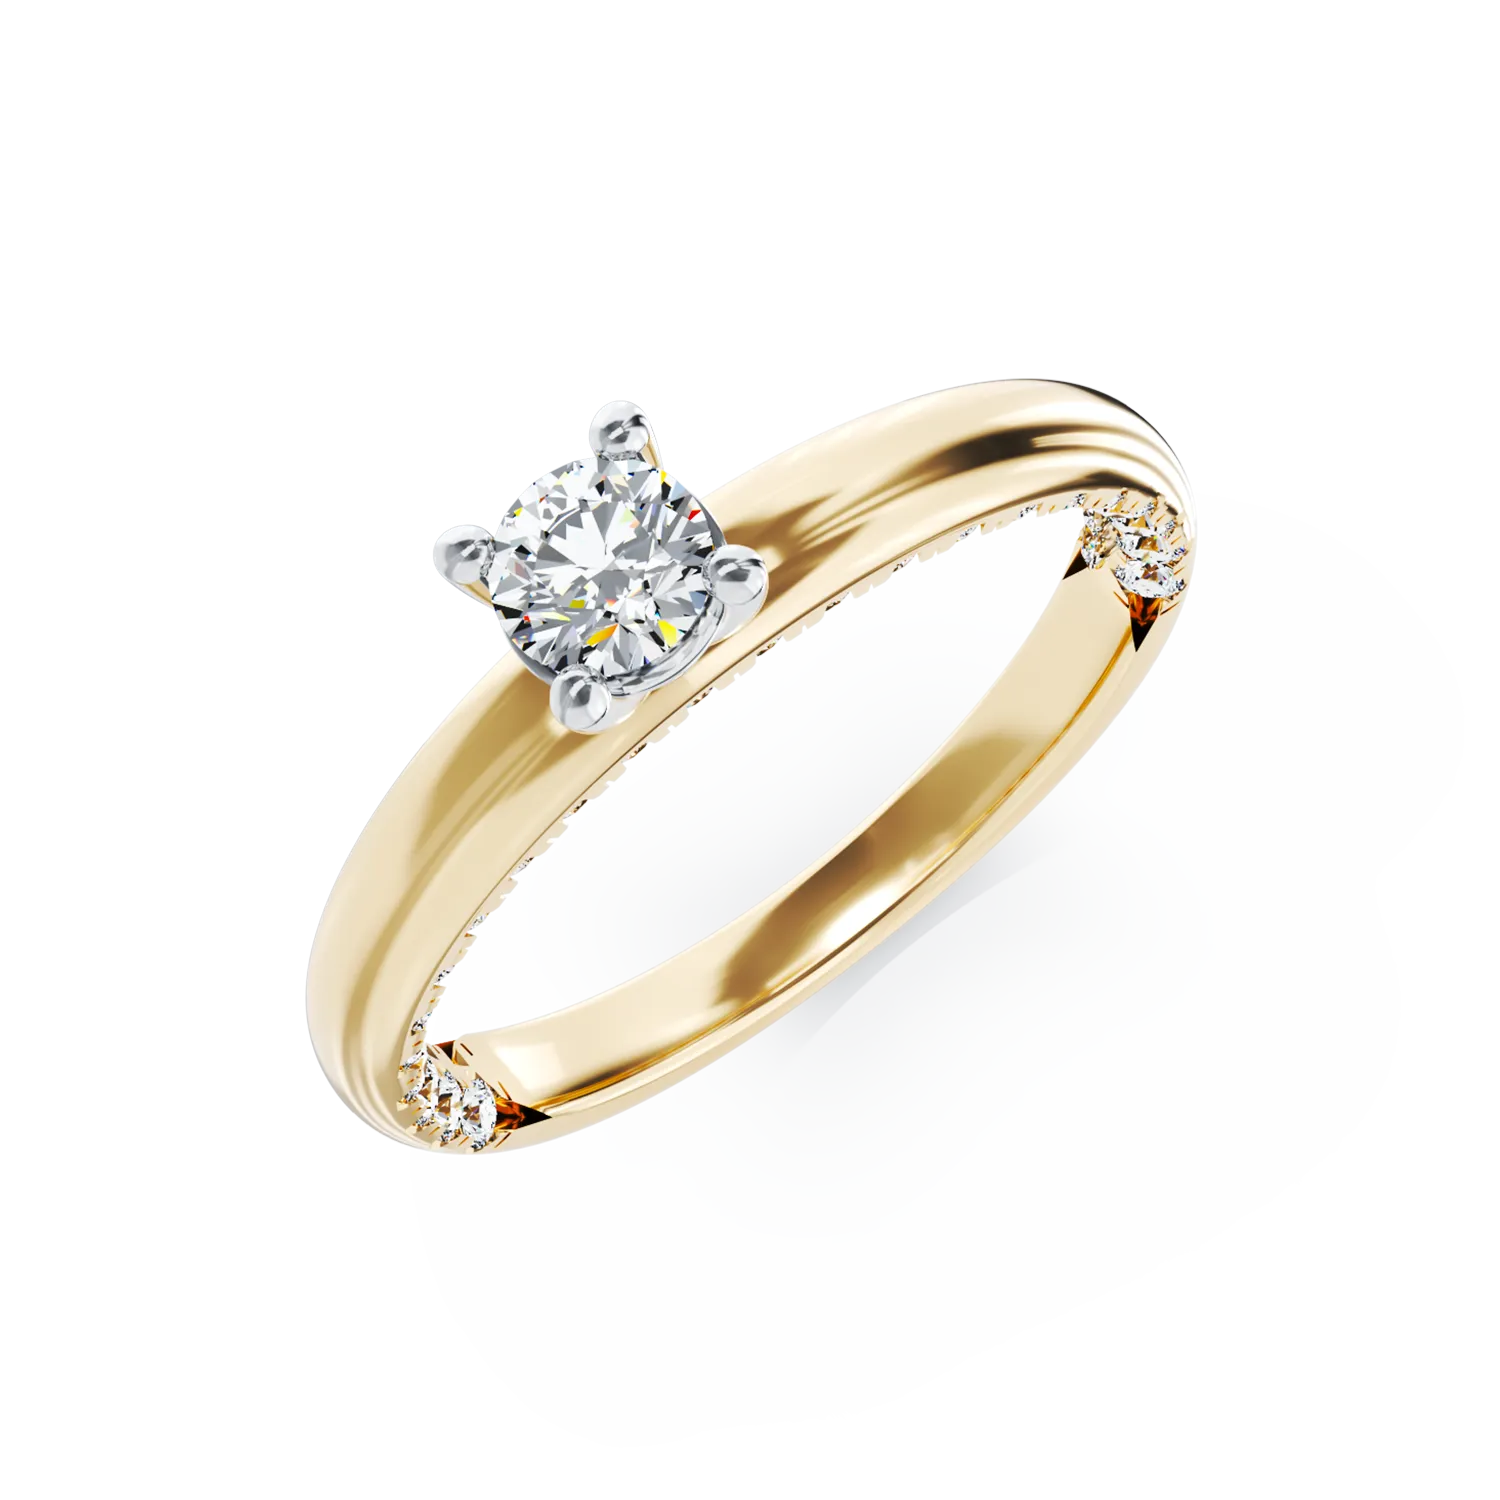 Eljegyzési gyűrű 18K-os sárga aranyból 0,19ct gyémánttal és 0,2ct gyémánttal. Gramm: 3,14